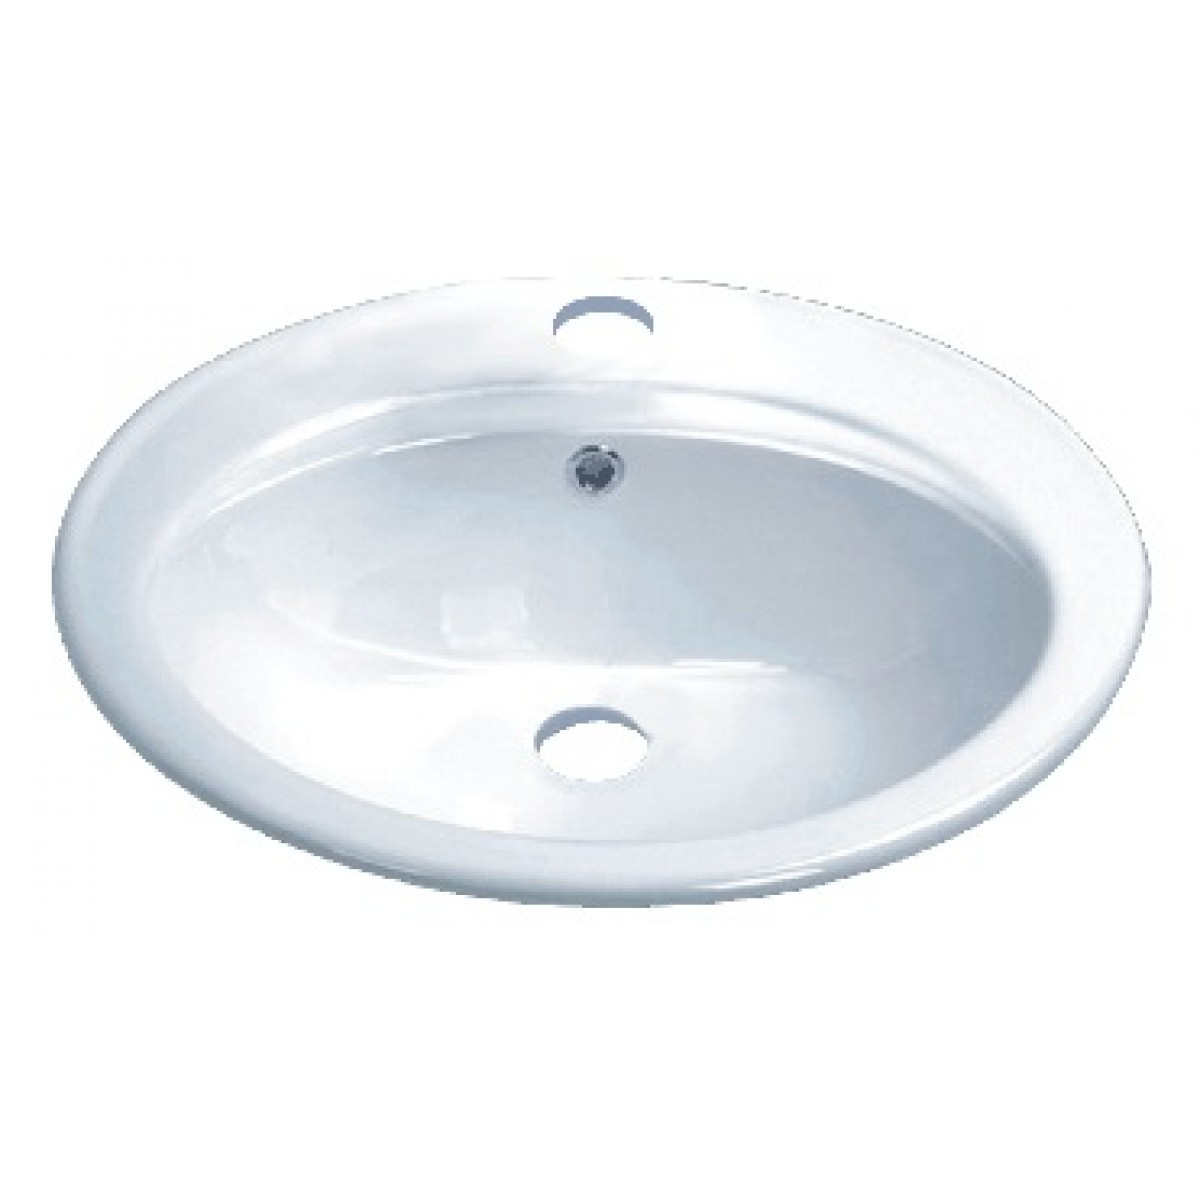 Drop In Bathroom Sink
 Porcelain Ceramic Vanity Drop In Bathroom Vessel Sink 22